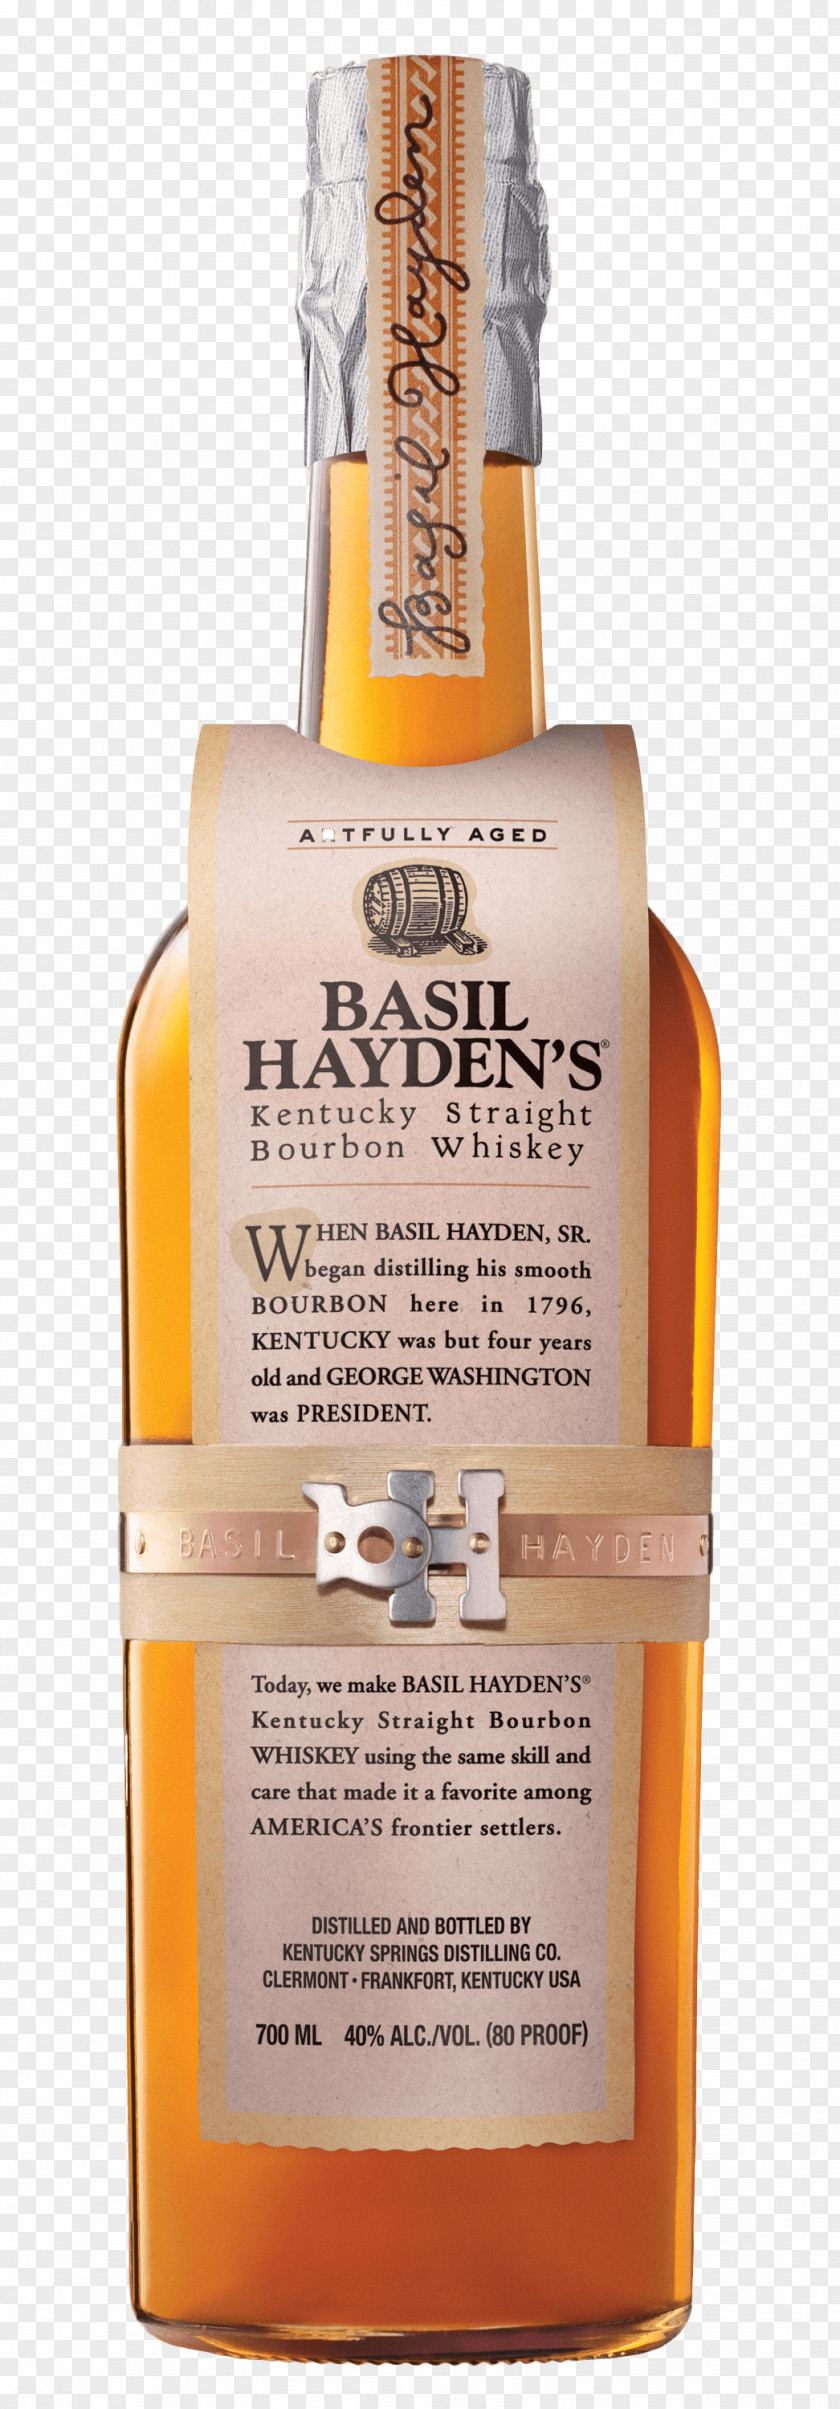 Whisky.png Basil Hayden's Bourbon Whiskey Rye Distilled Beverage PNG